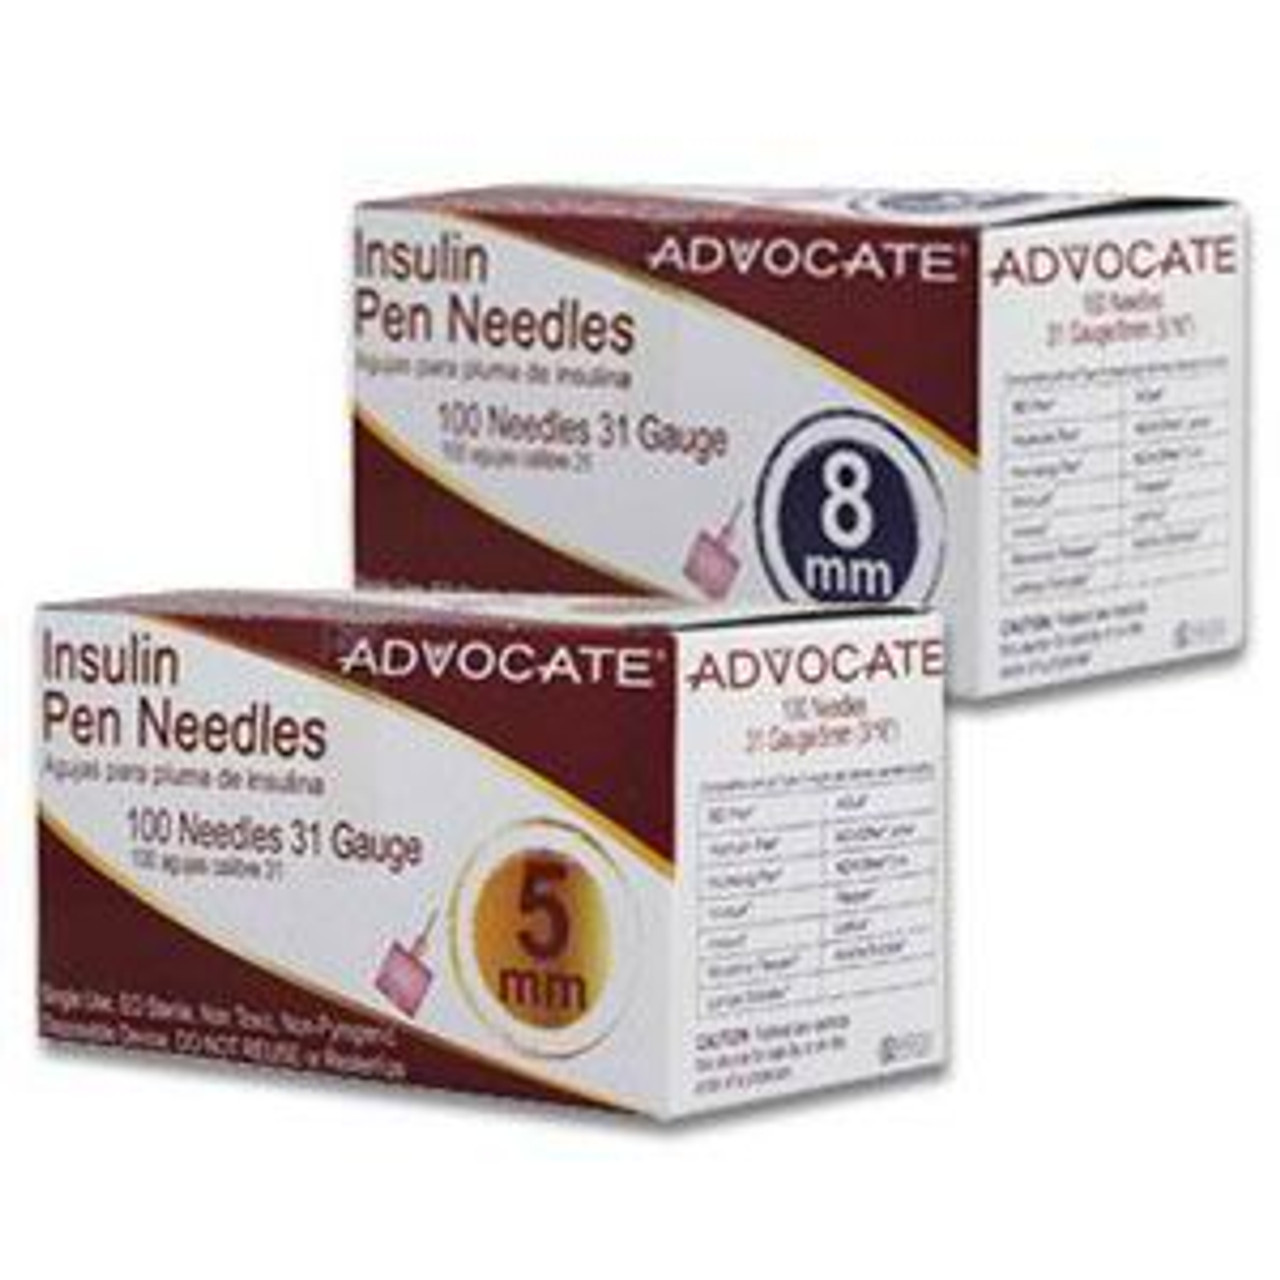 Advocate Insulin Pen Needle, 31G x 3/16 $12.76/Box of 100616